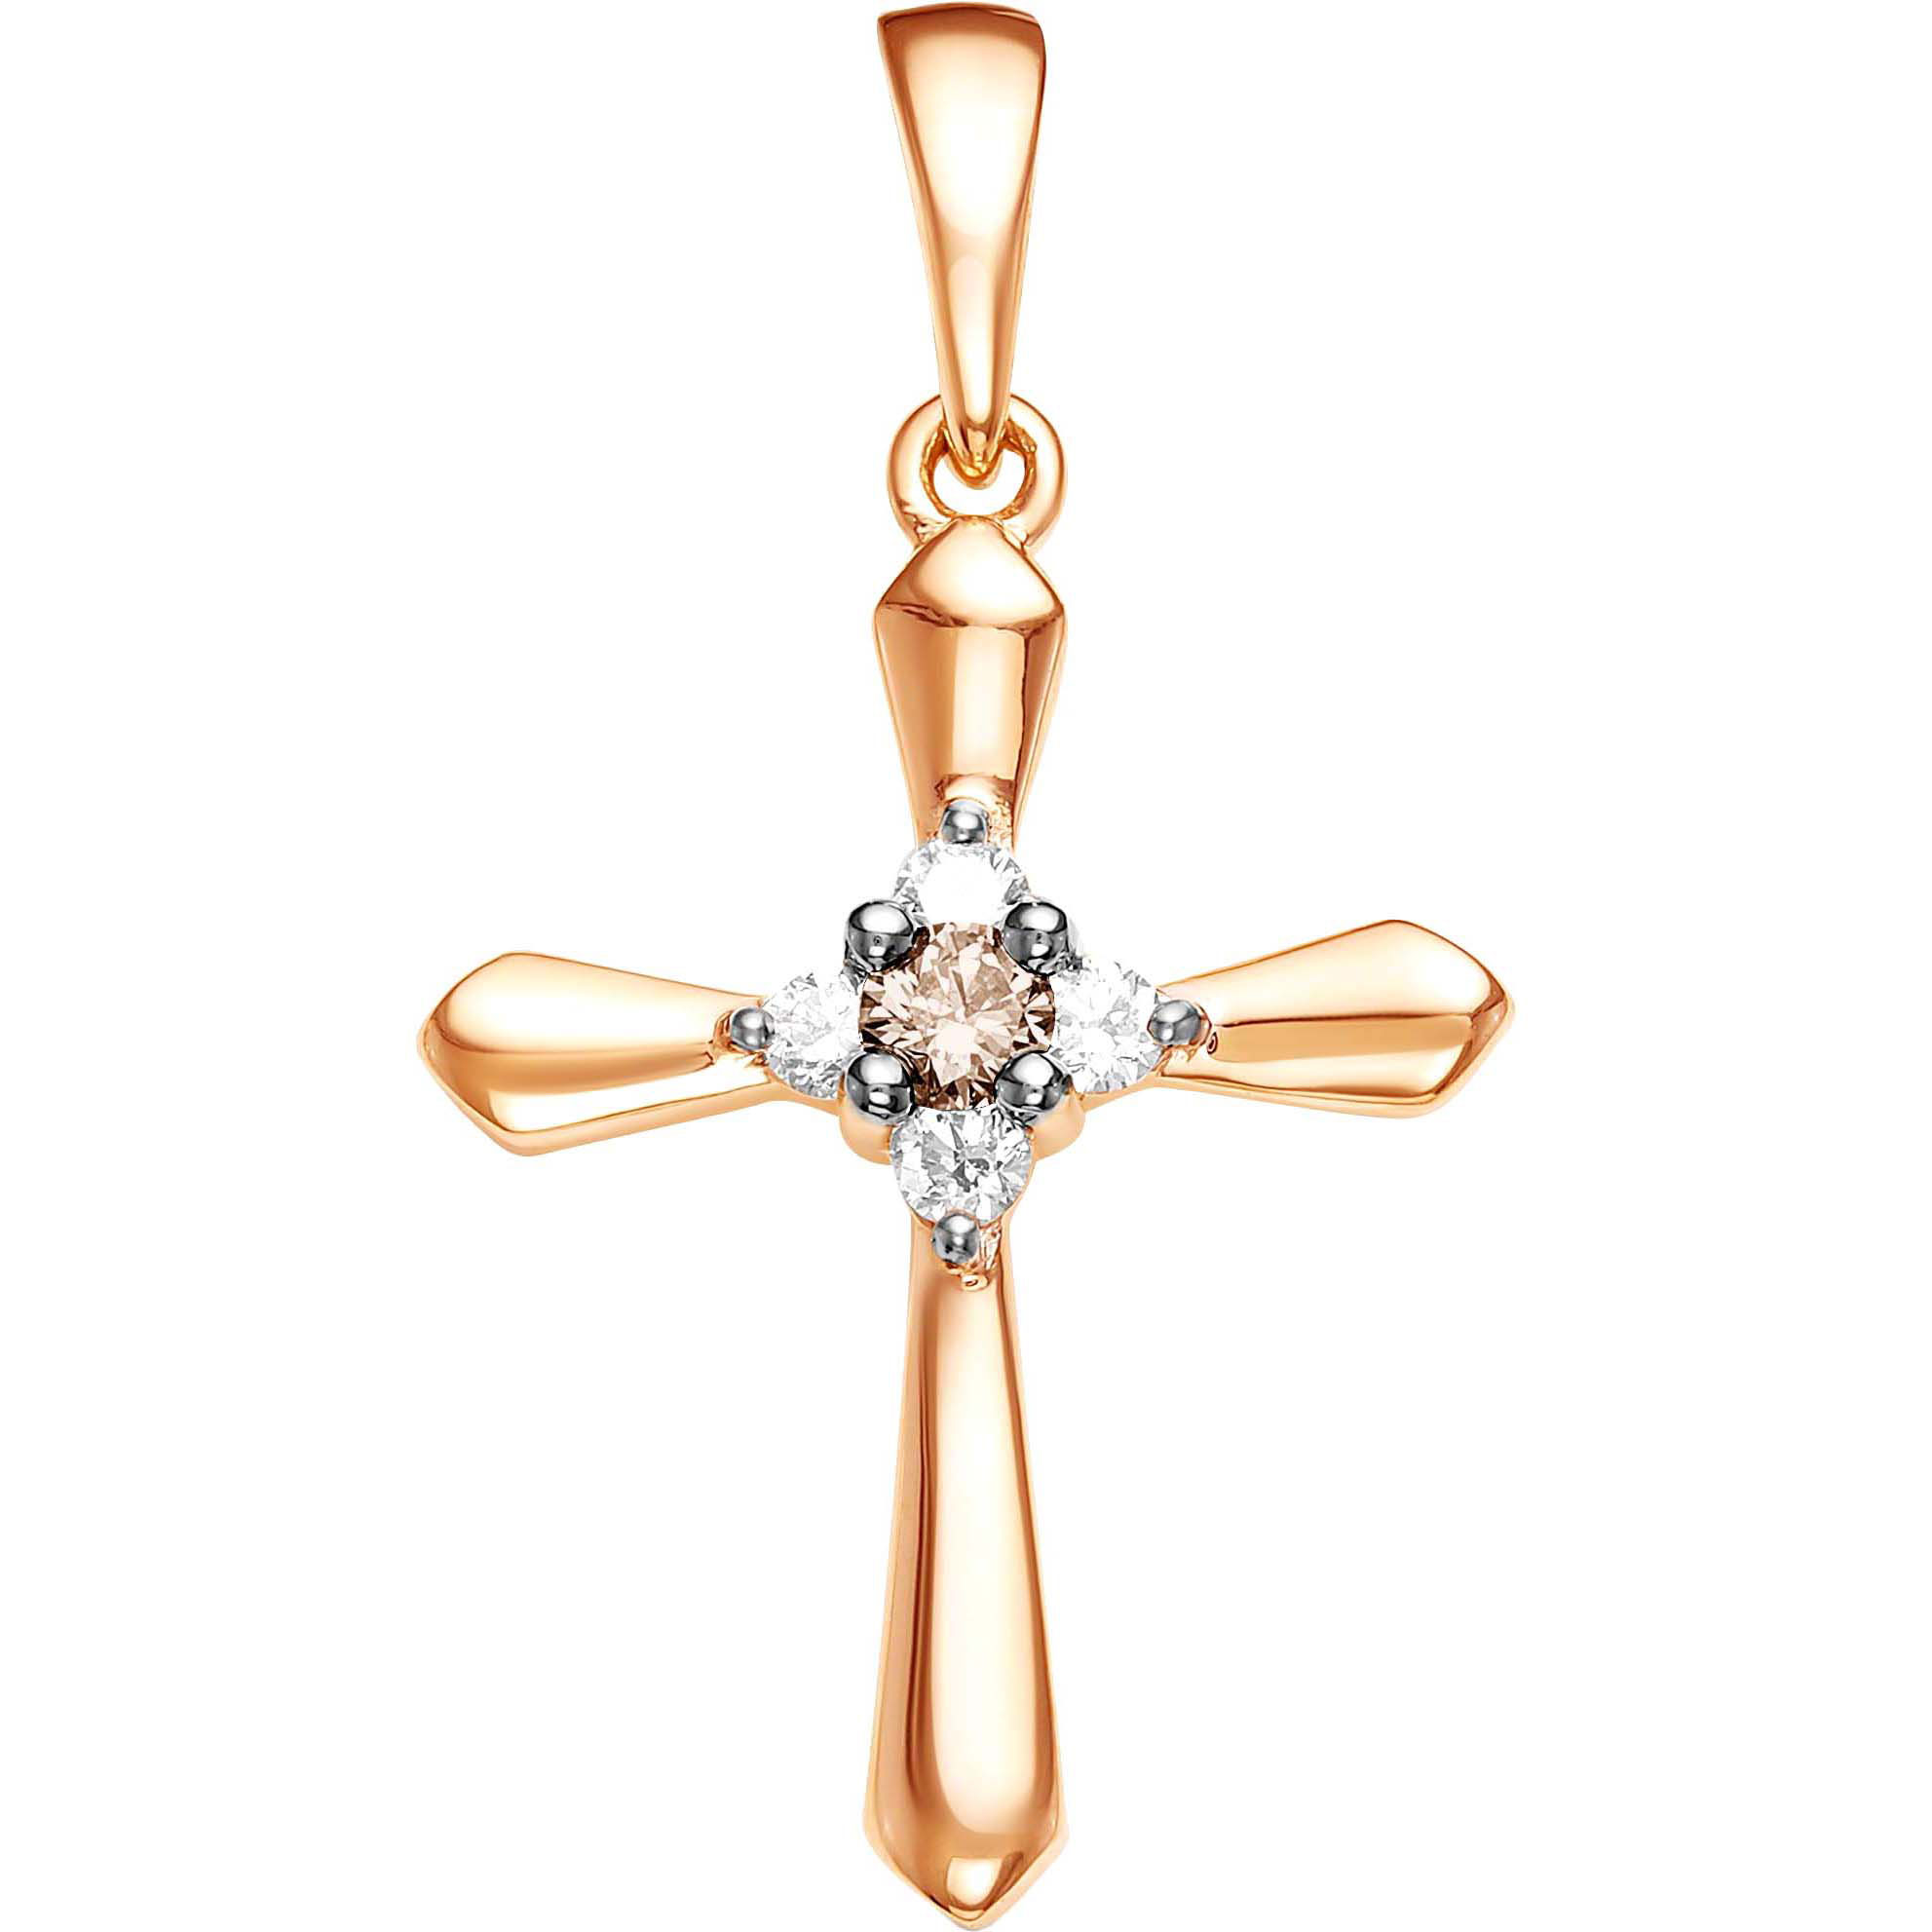 Женский золотой декоративный крестик Vesna jewelry 3212-151-162-00 с цветными бриллиантами